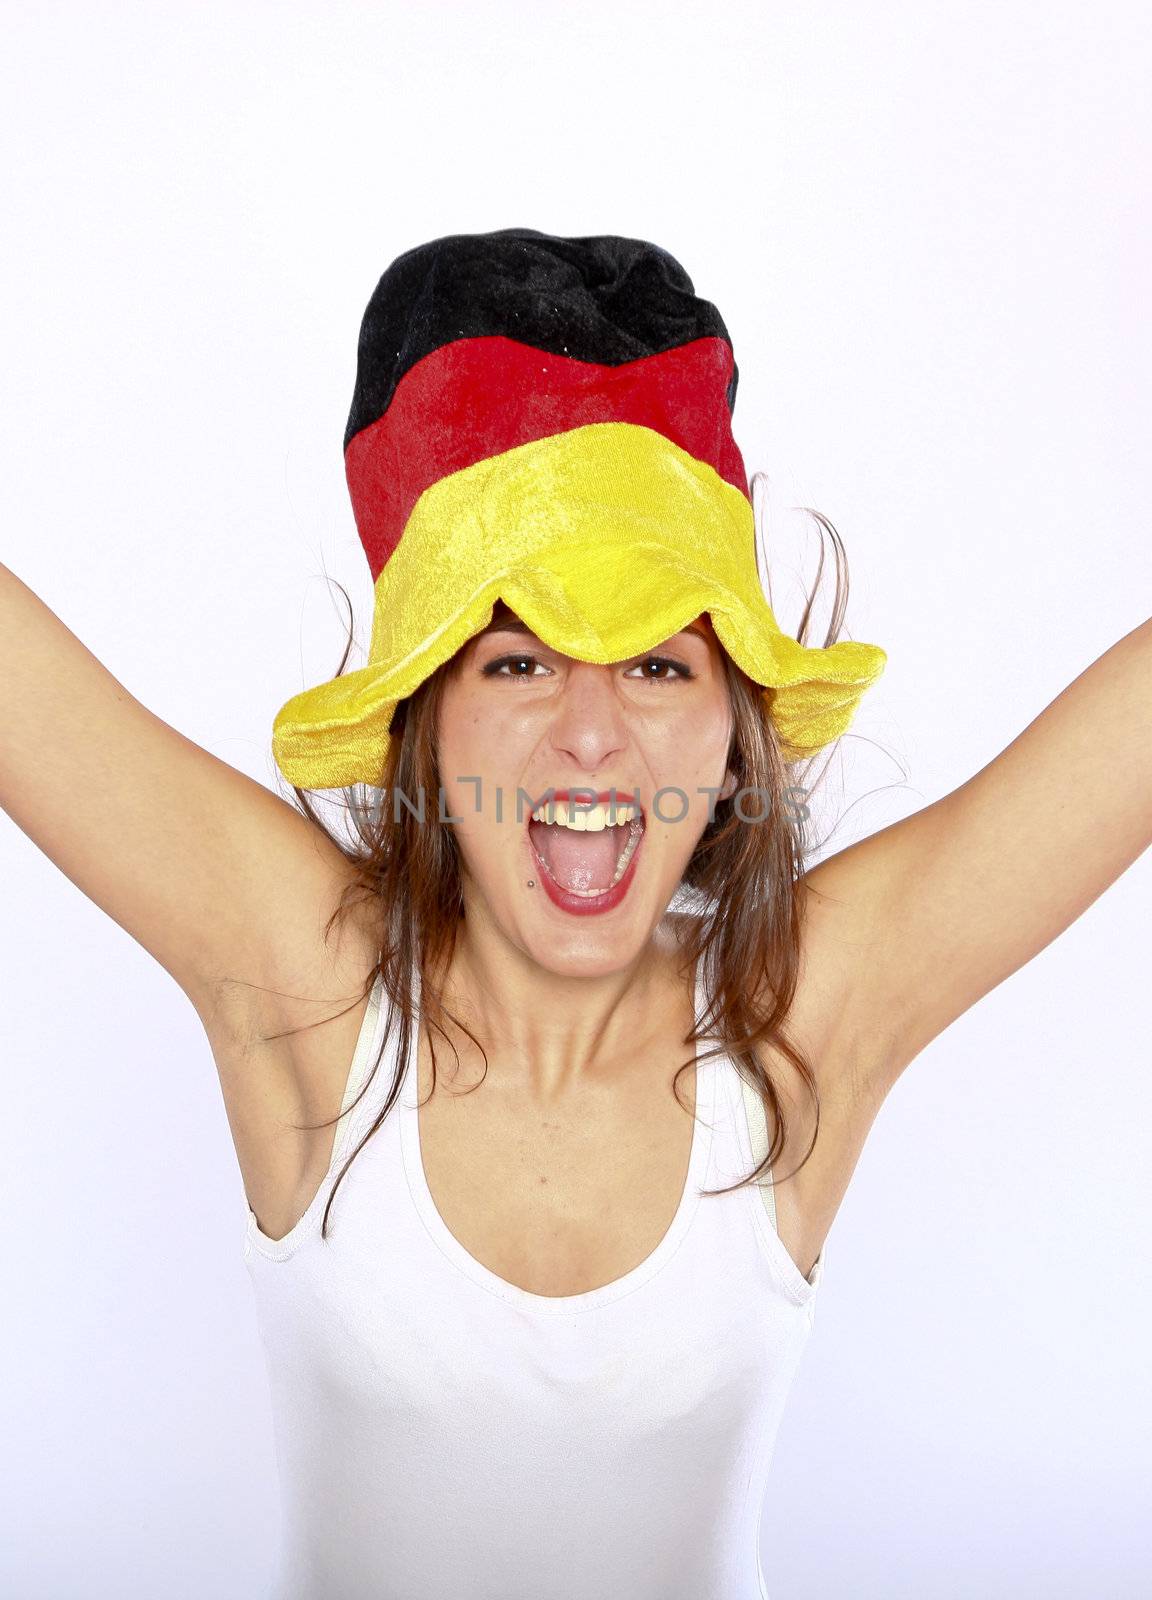 Soccer Fan Woman Wearing A Hat by nfx702